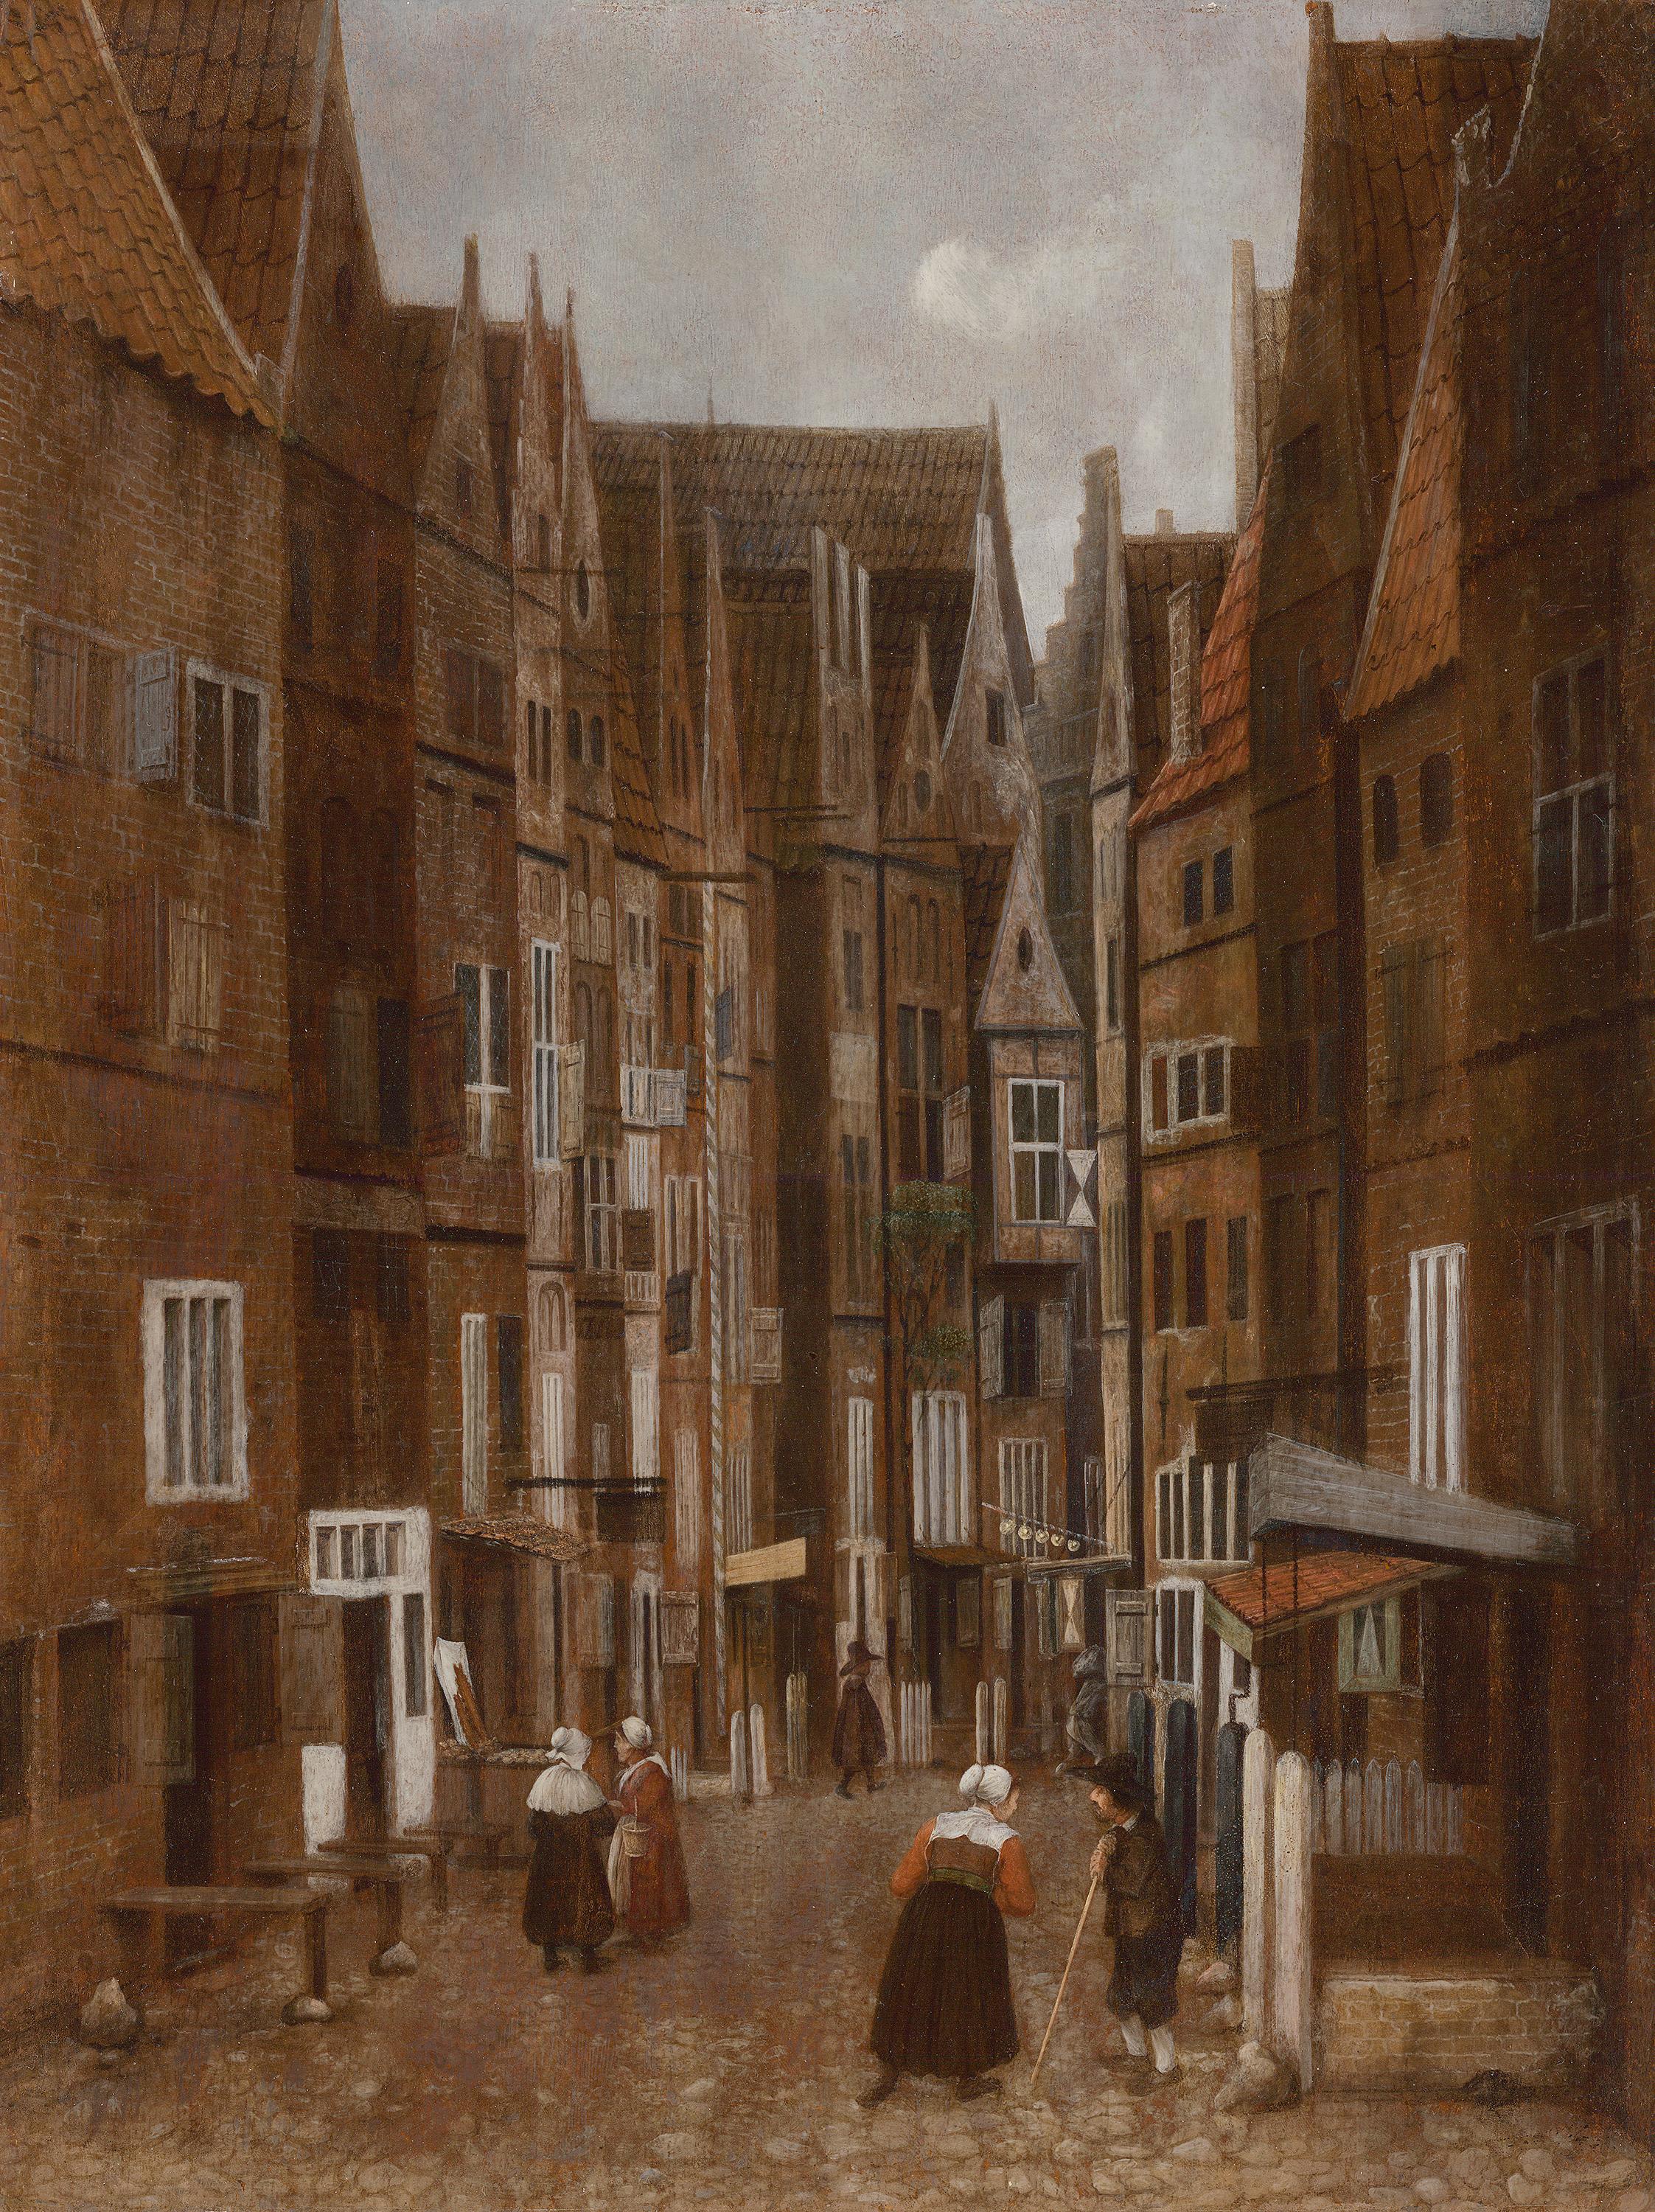 Konuşan İnsanlarla Sokak Sahnesi (orig. "Street Scene with People Conversing") by Jacobus Vrel - 1633 sonrası - 39 x 29,3 cm 